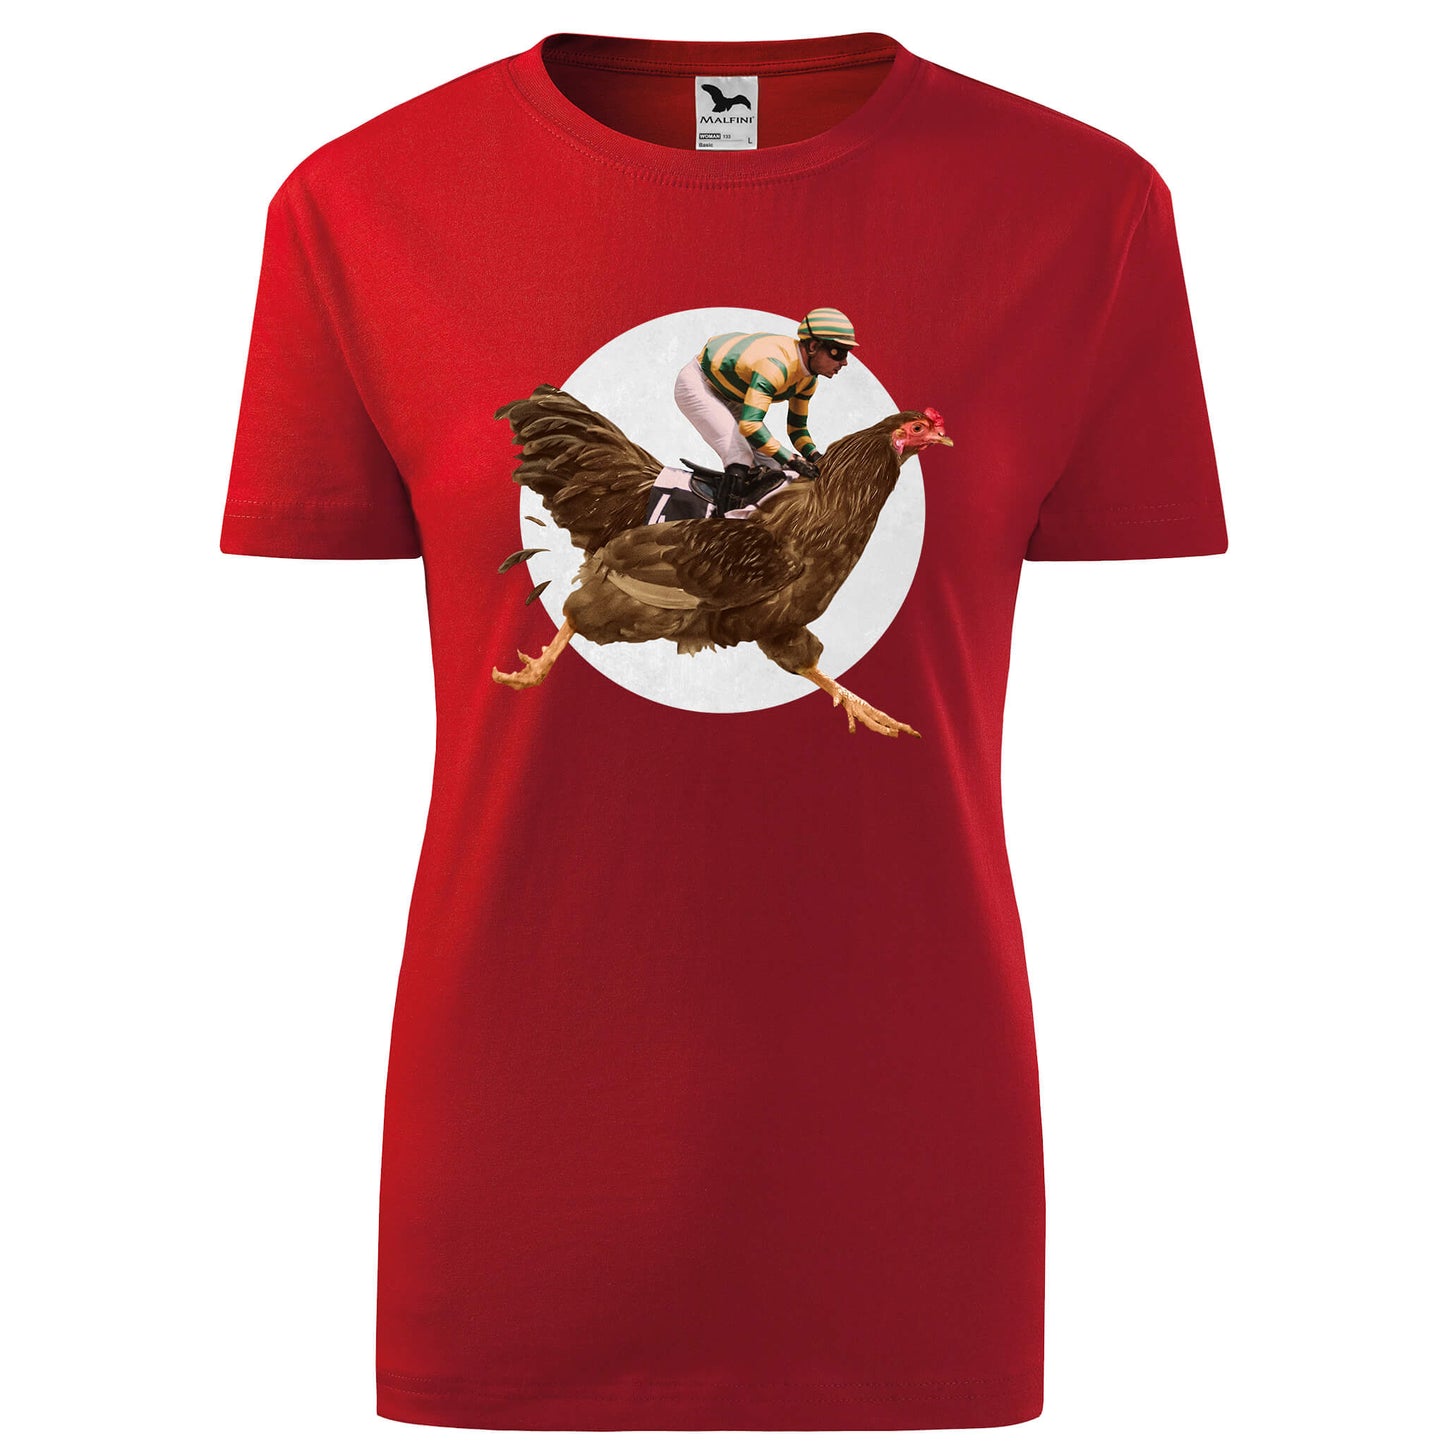 Man riding a chicken t-shirt - rvdesignprint